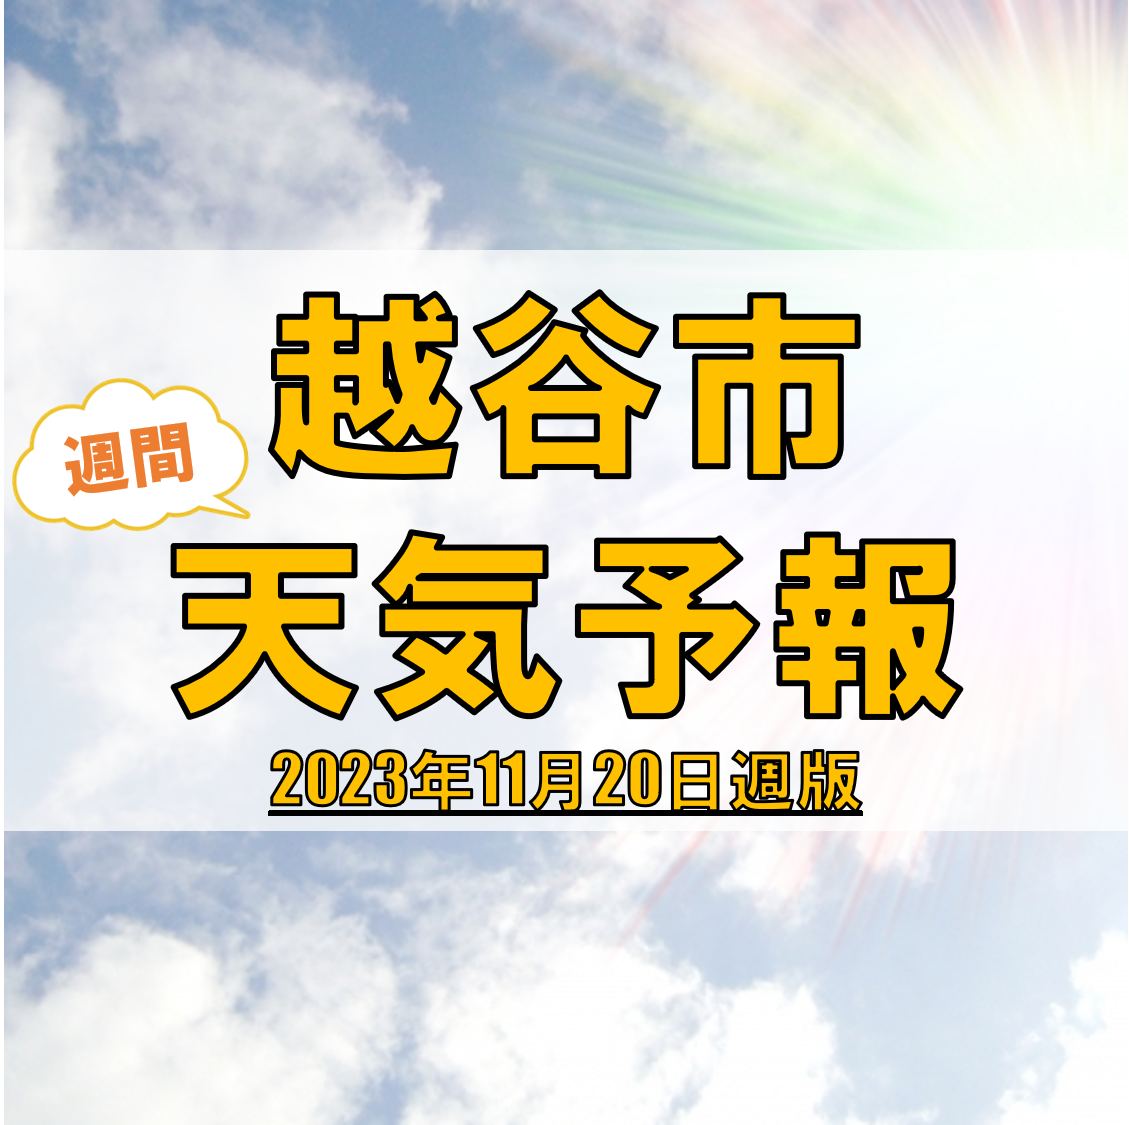 越谷市の天気 週間予報【2023年11月20日週】